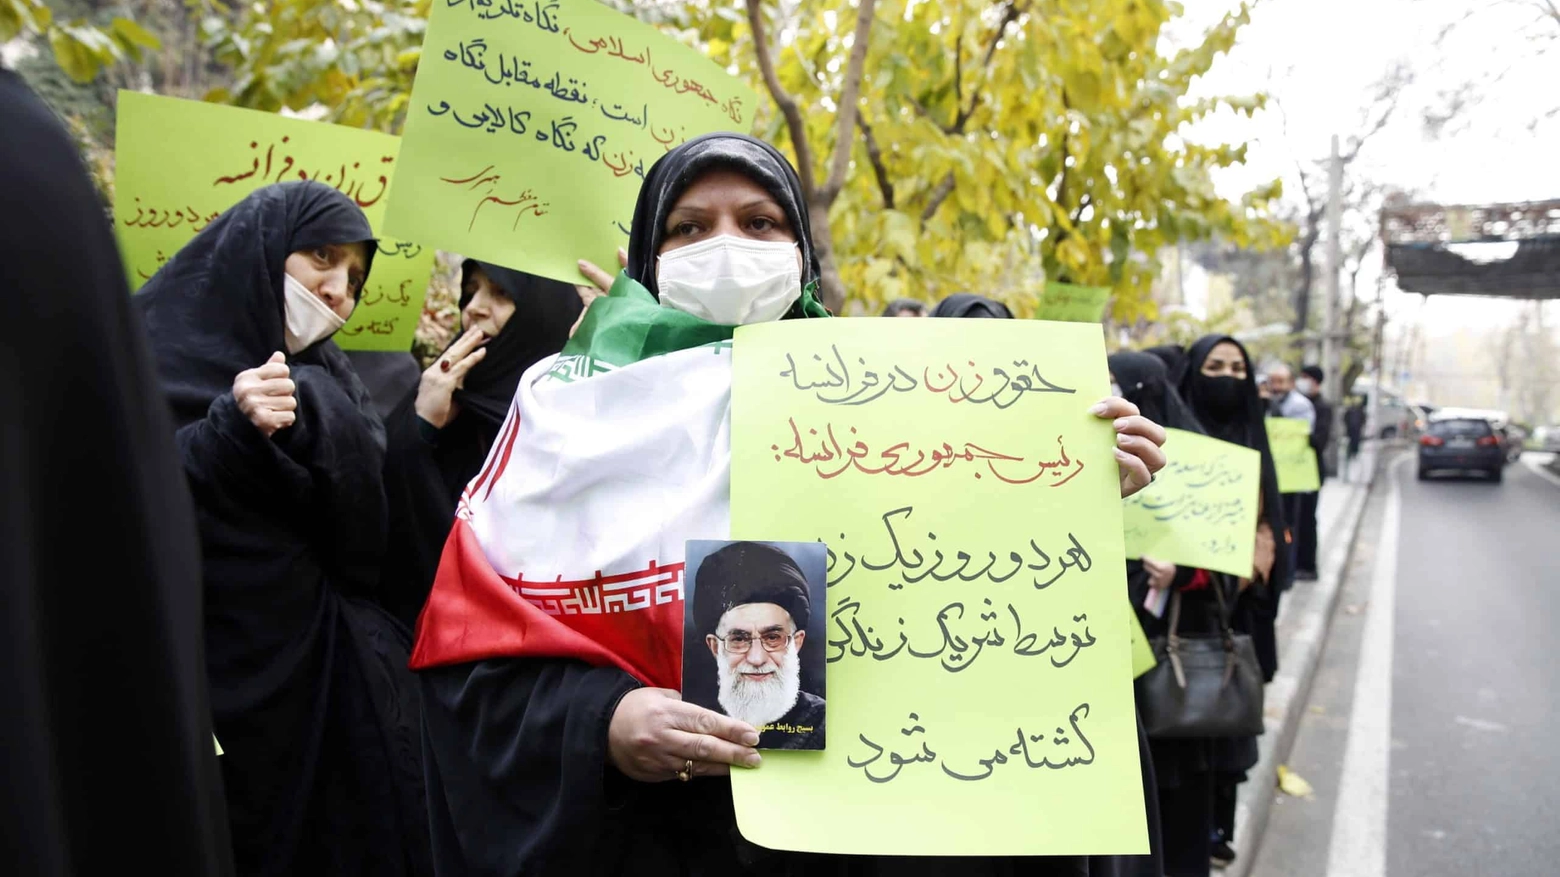 Onu espelle Iran da commissione su status donne